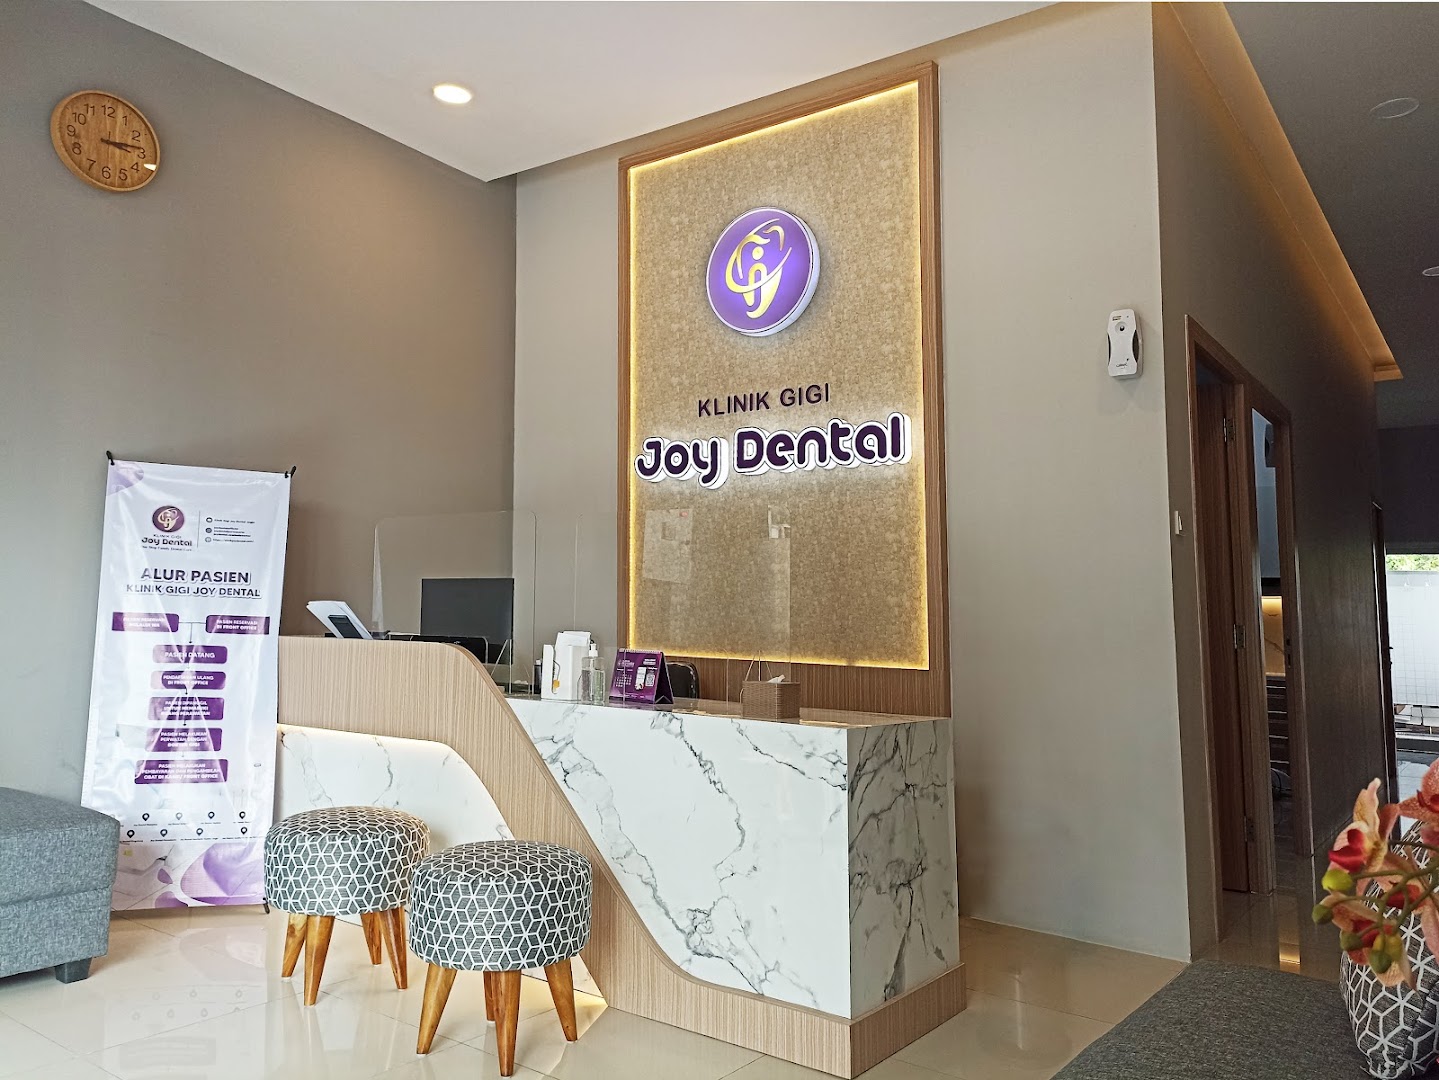 Klinik Gigi Joy Dental Semarang Photo